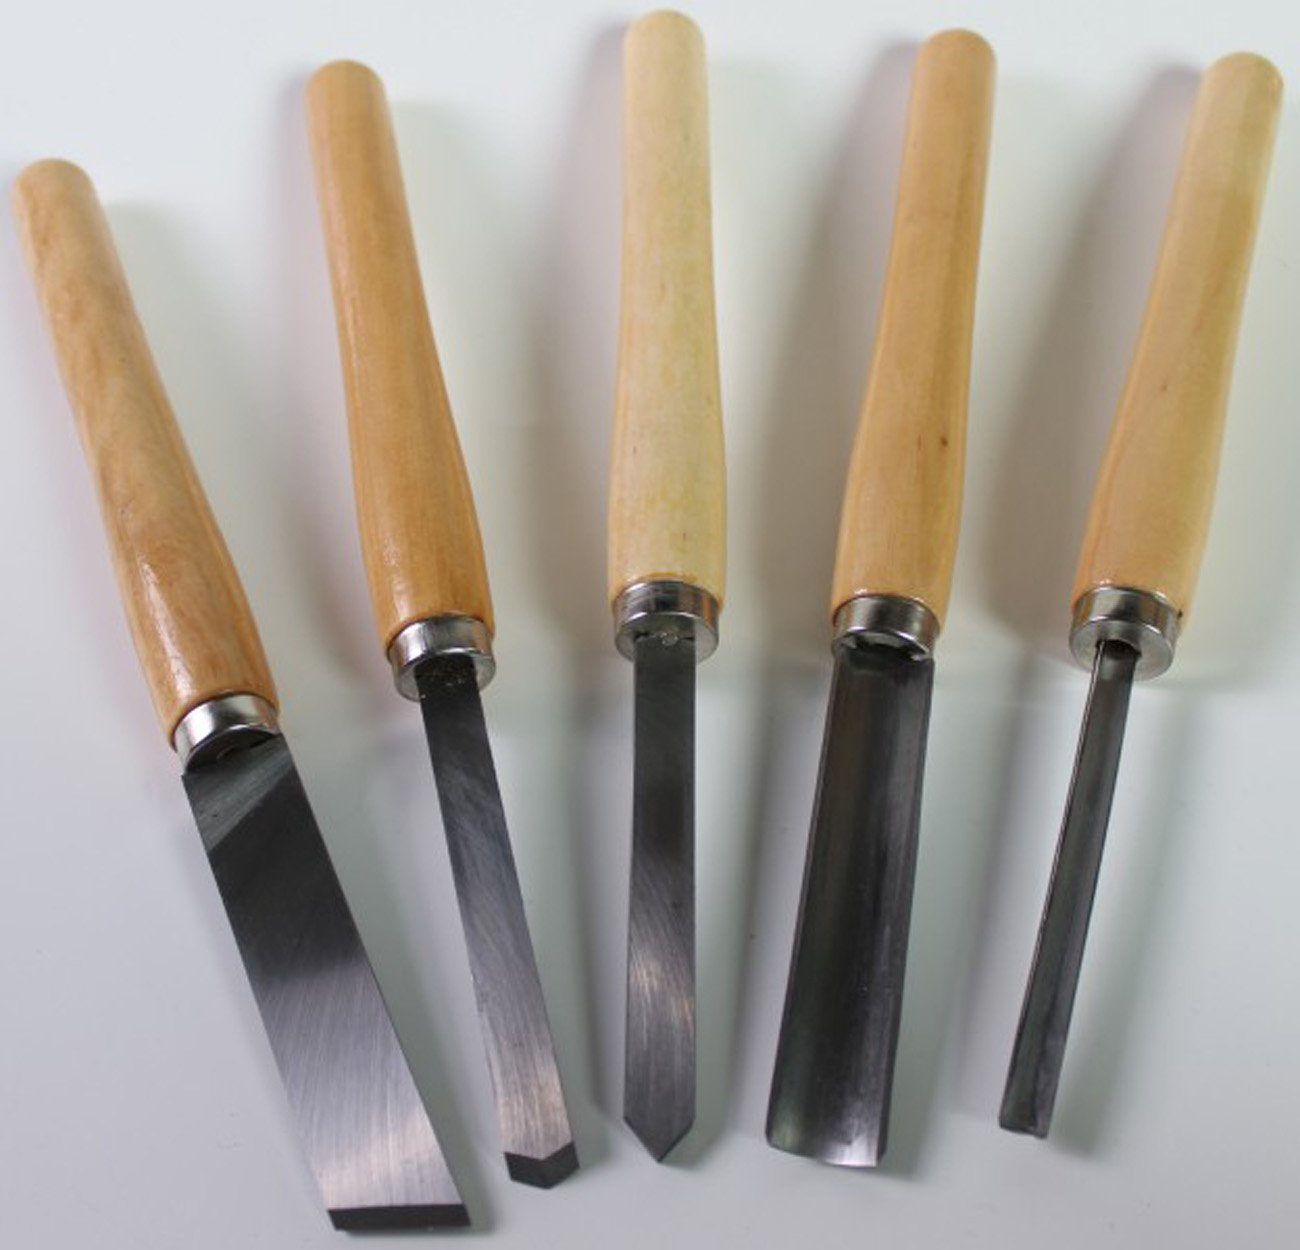 myMAW Drechselbeitel drechsel Beitel Messer … drechseln Drechseleisen 5 Universalmesser